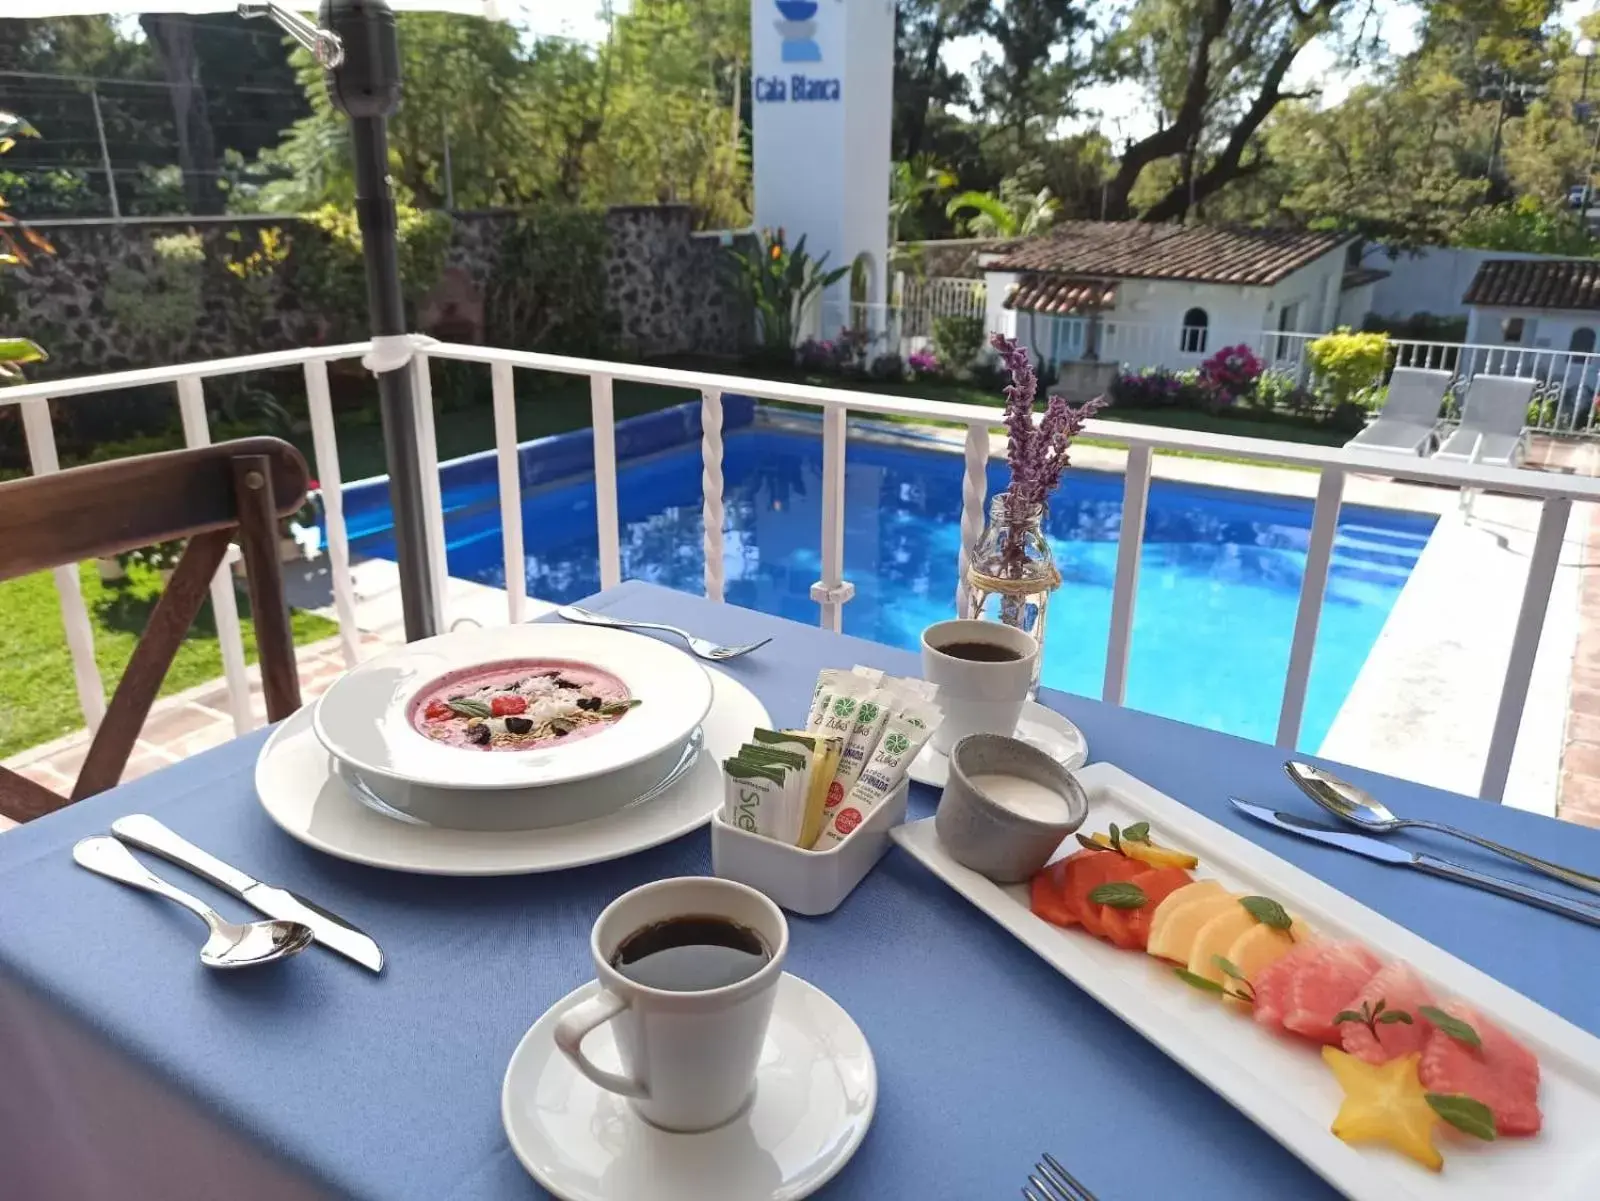 Food and drinks, Pool View in Hotel Cala Blanca Cuernavaca